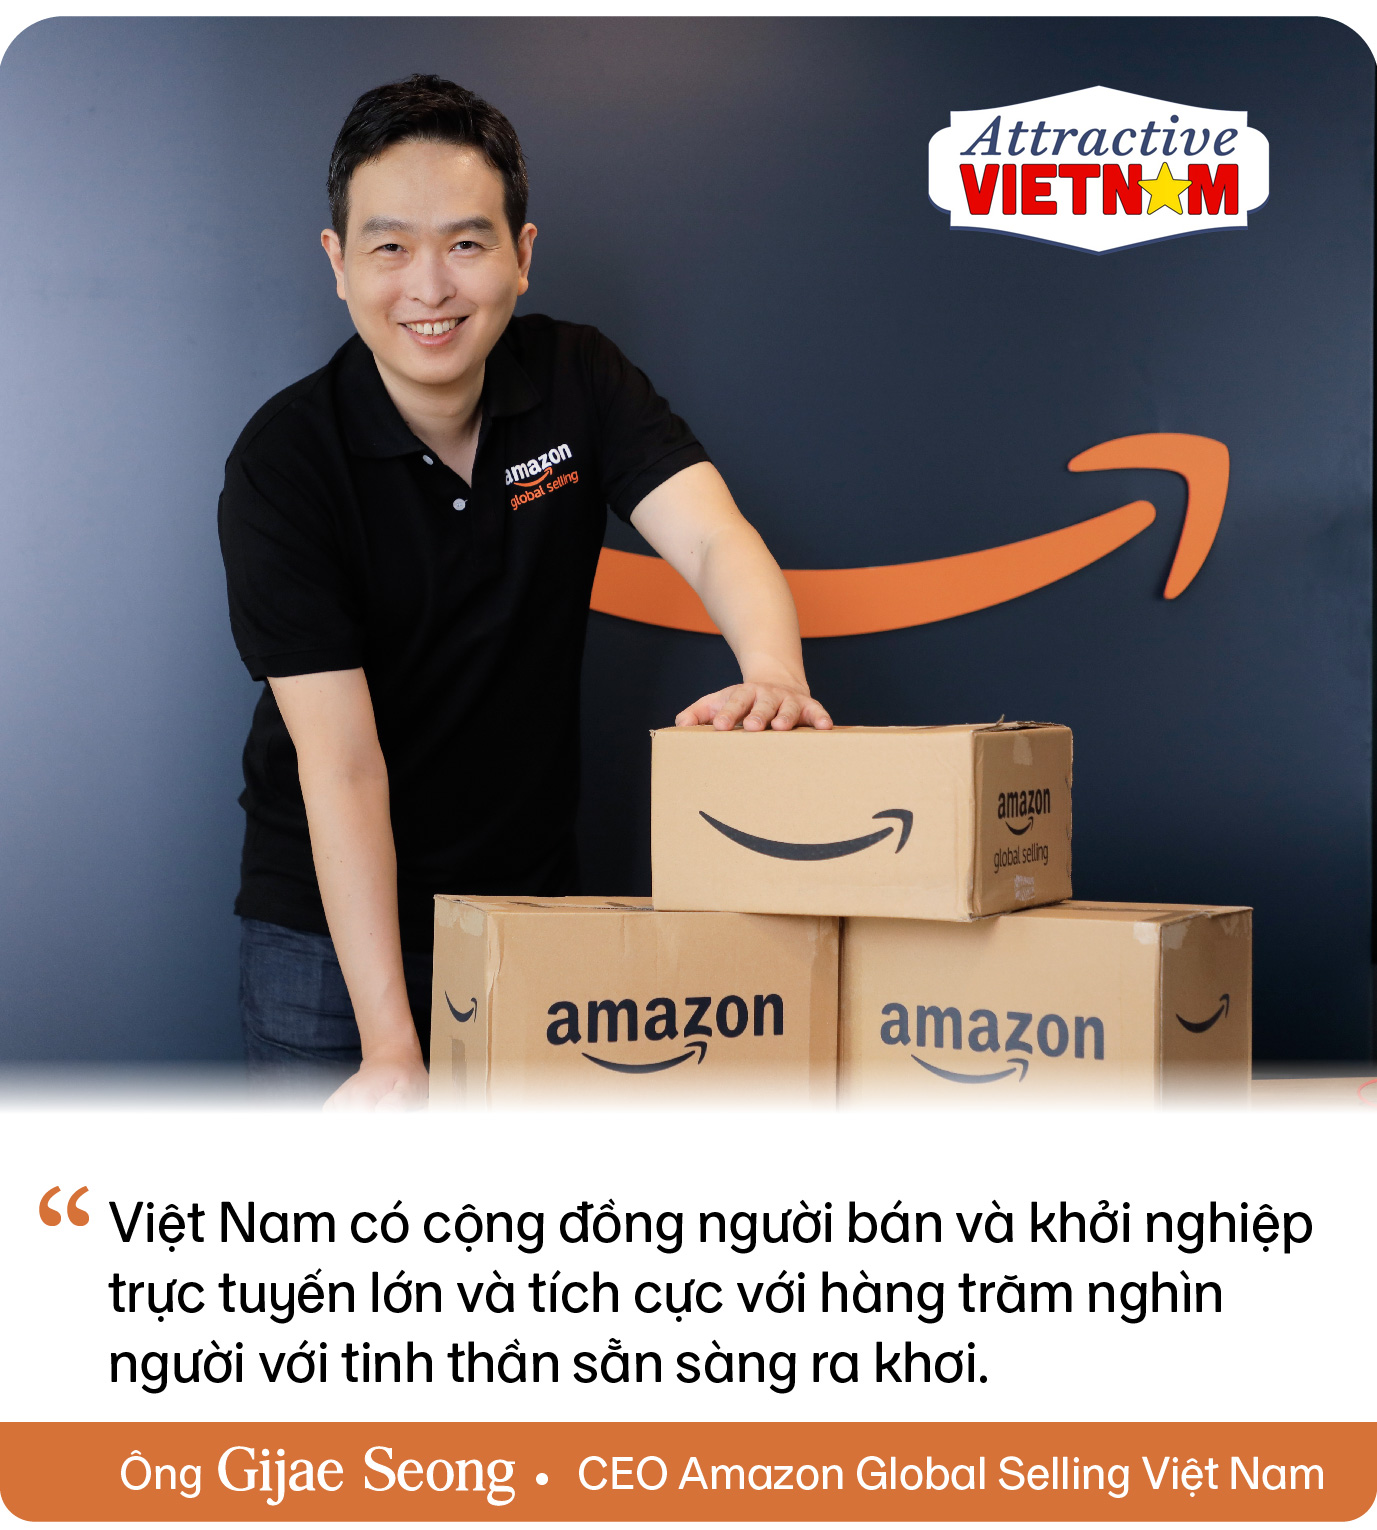 CEO Amazon Global Selling Việt Nam chỉ ra thế mạnh đặc biệt giúp Việt Nam bùng nổ và trở thành thị trường trực tuyến sôi động nhất khu vực - Ảnh 4.